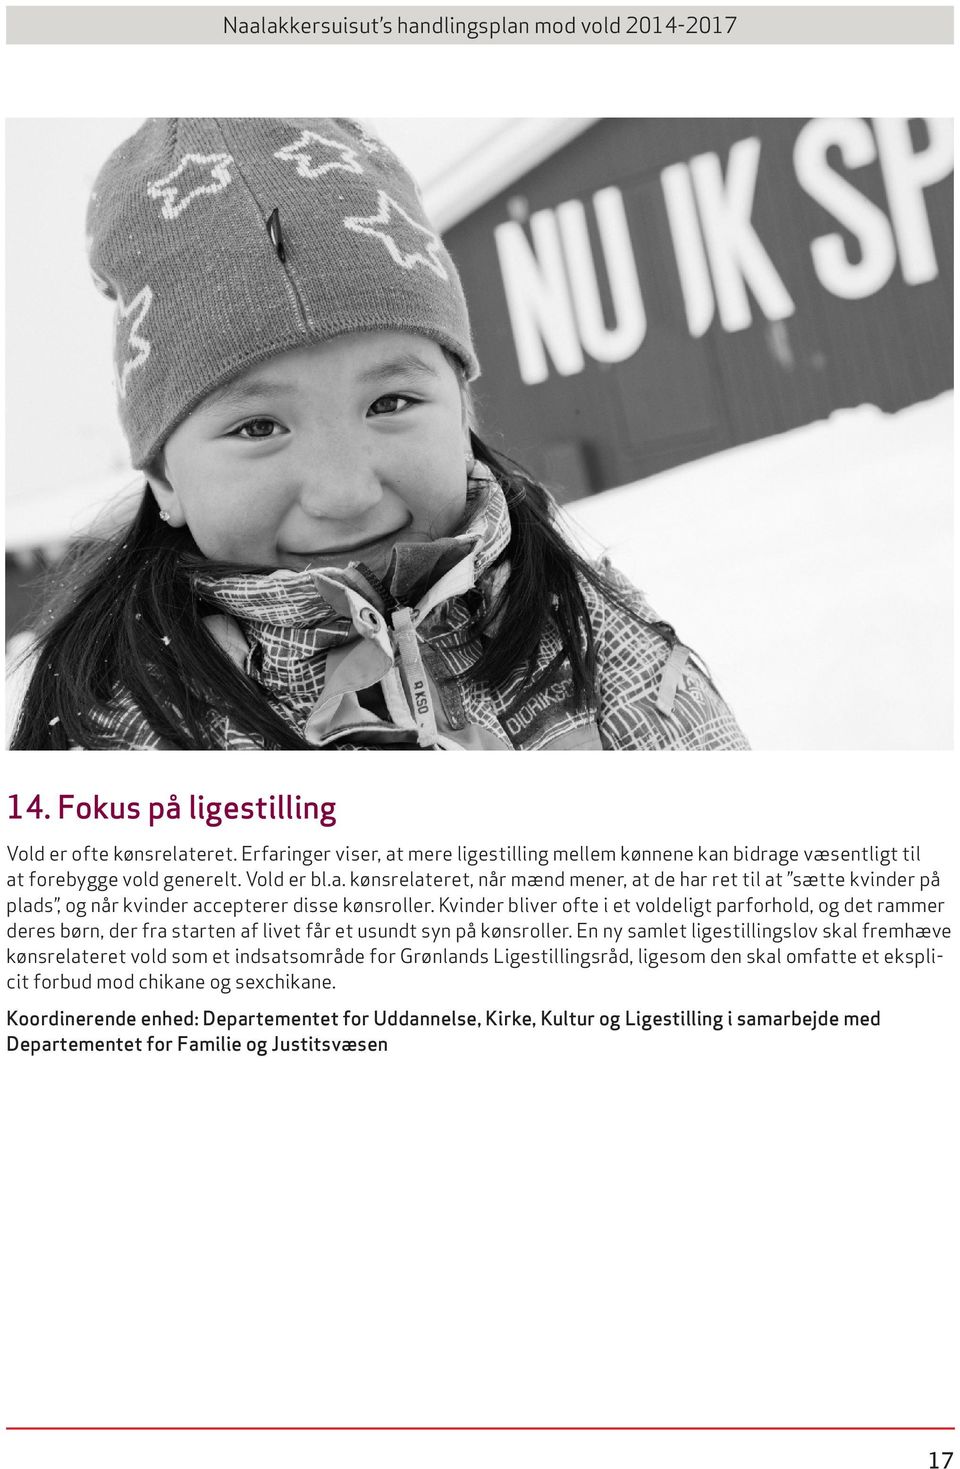 En ny samlet ligestillingslov skal fremhæve kønsrelateret vold som et indsatsområde for Grønlands Ligestillingsråd, ligesom den skal omfatte et eksplicit forbud mod chikane og sexchikane.